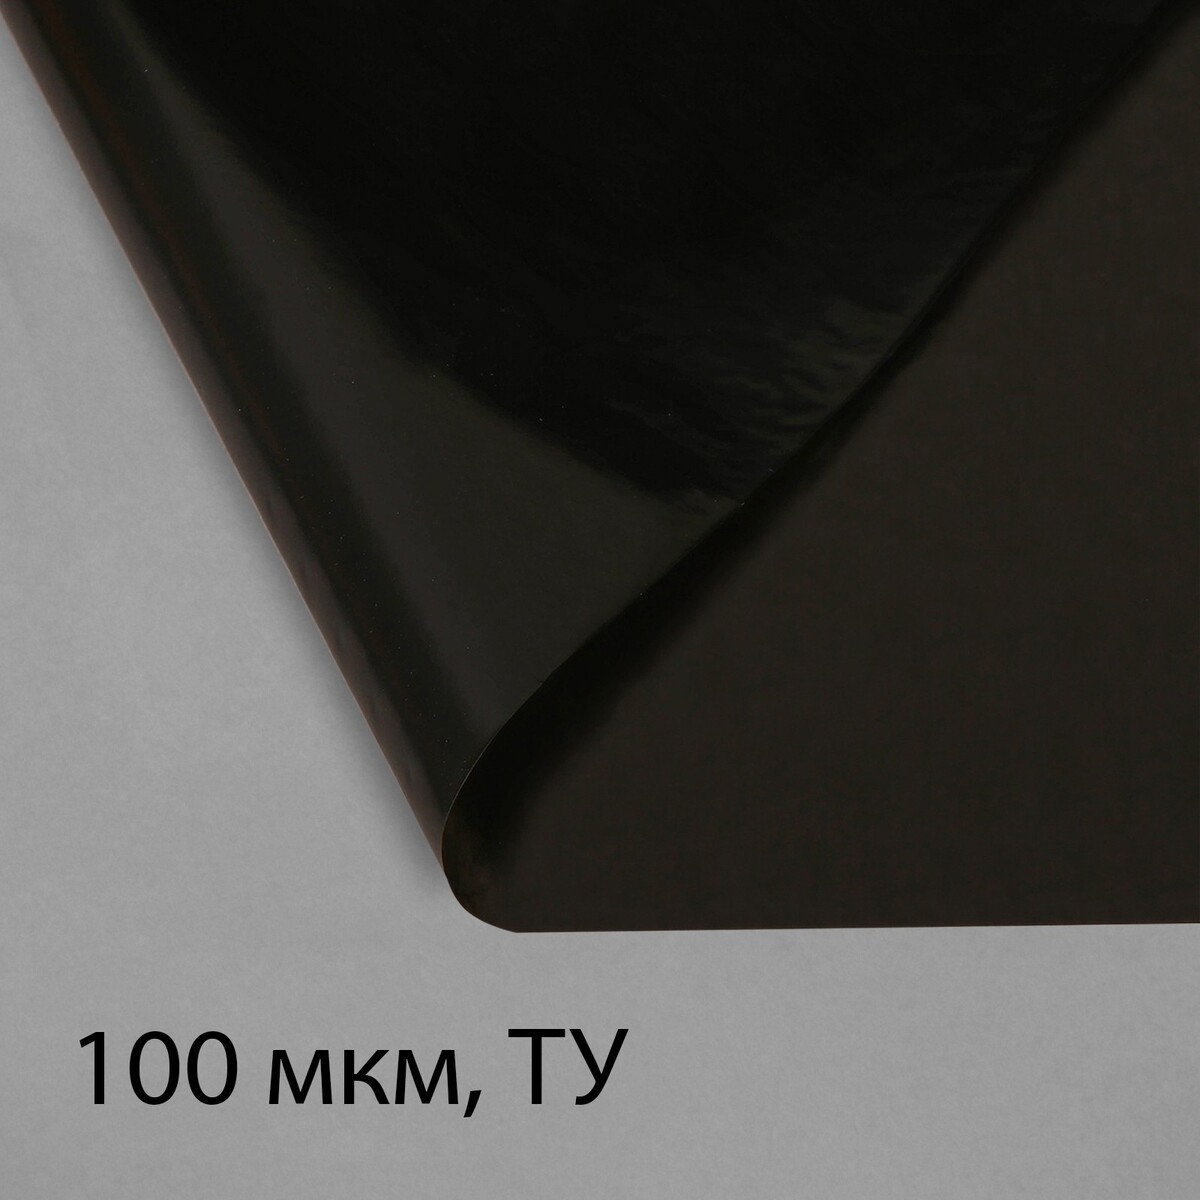 Пленка полиэтиленовая, техническая, 100 мкм, черная, длина 10 м, ширина 3 м, рукав (1.5 м × 2), эконом 50%